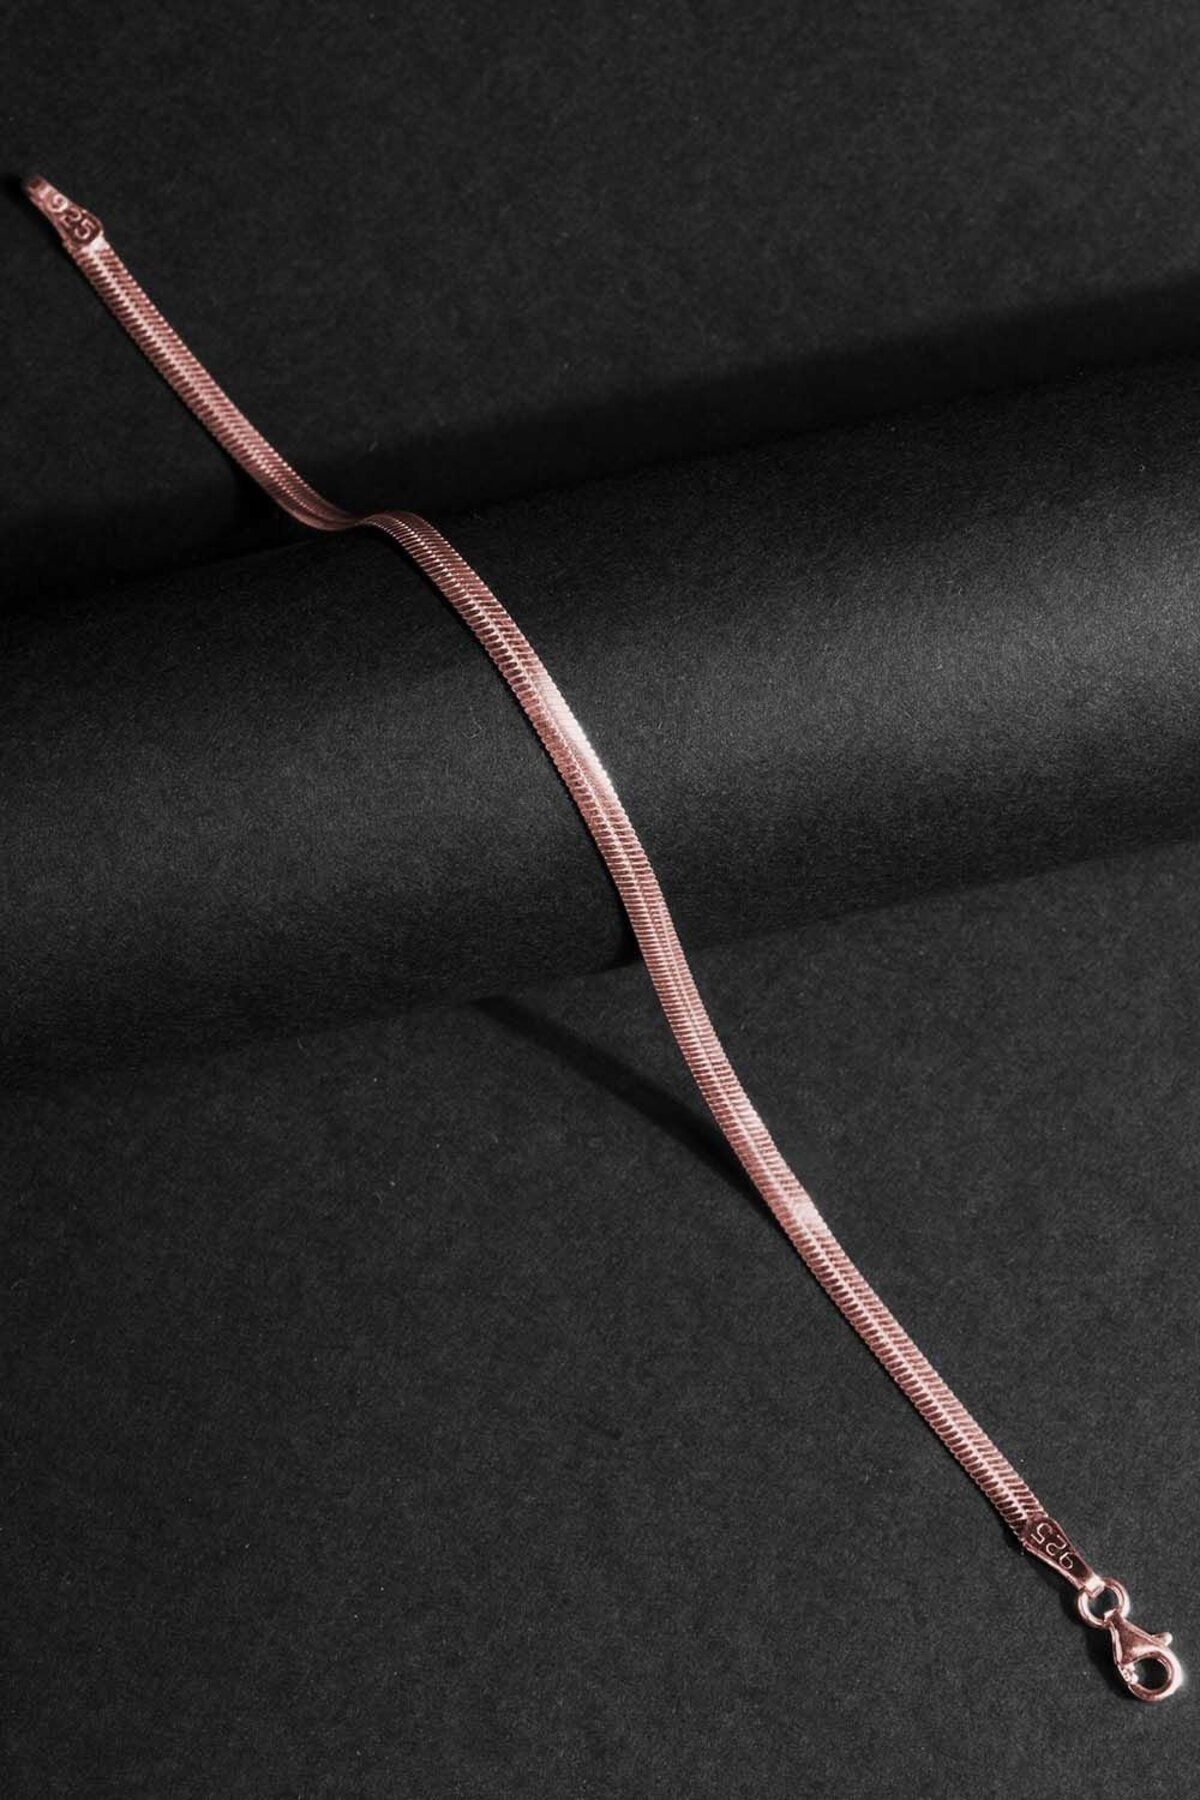 Takıdepo Yassı Yılan Model Gümüş 3,15 Mm Genişlik Bileklik - Rose Rengi